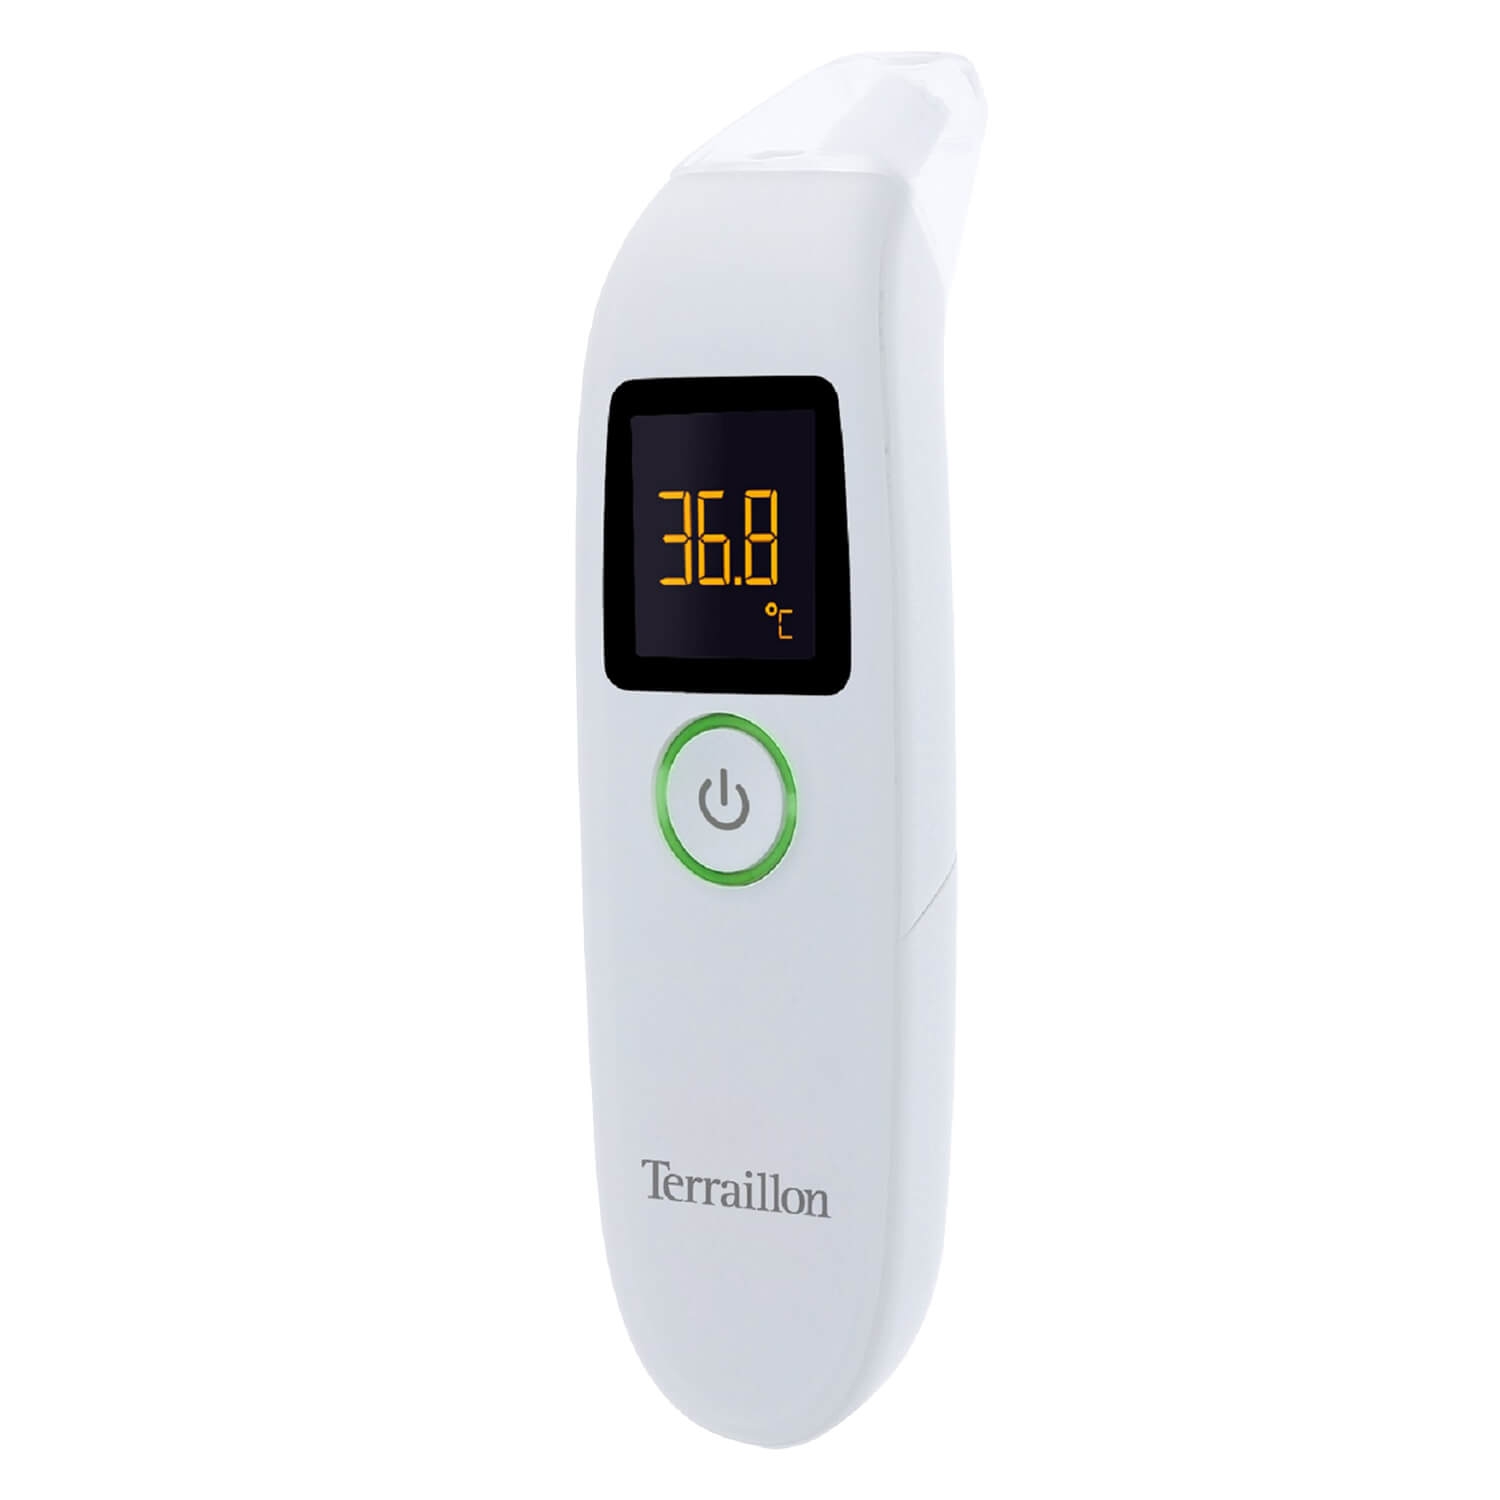 Produktbild von Terraillon - Infrarot Thermometer 3 in 1